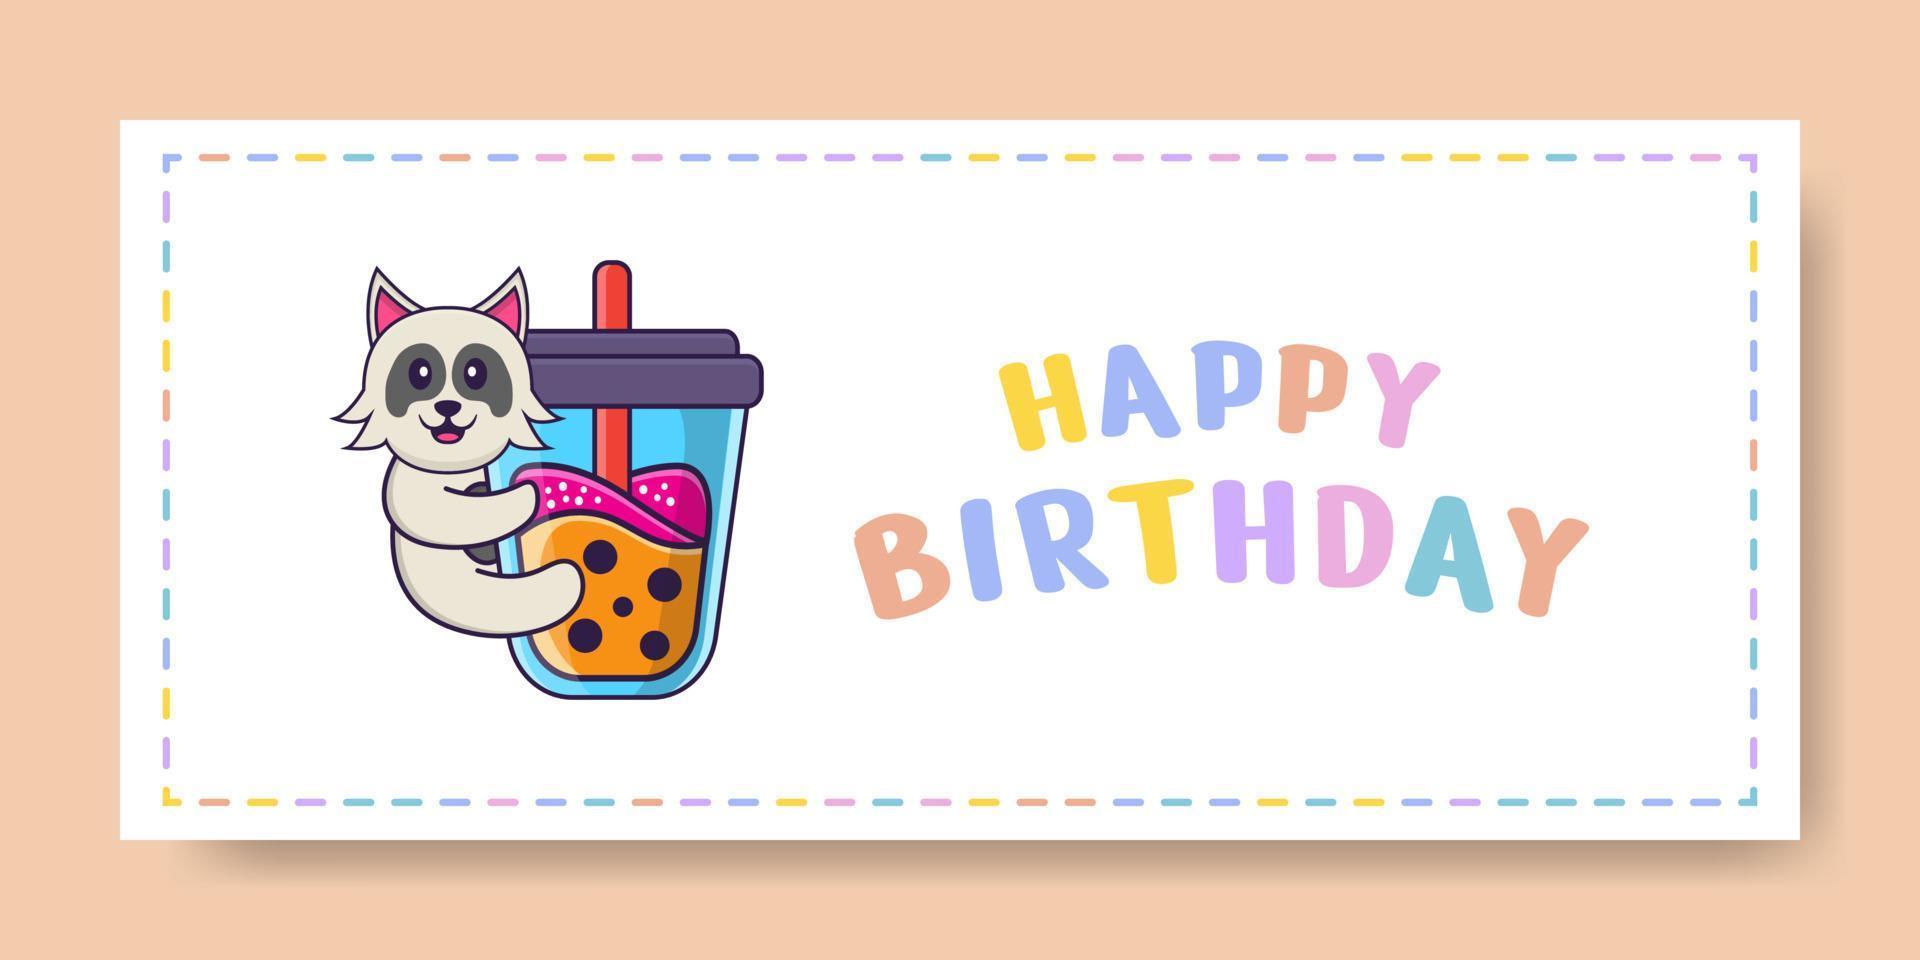 banner di buon compleanno con simpatico personaggio dei cartoni animati di cane. illustrazione vettoriale